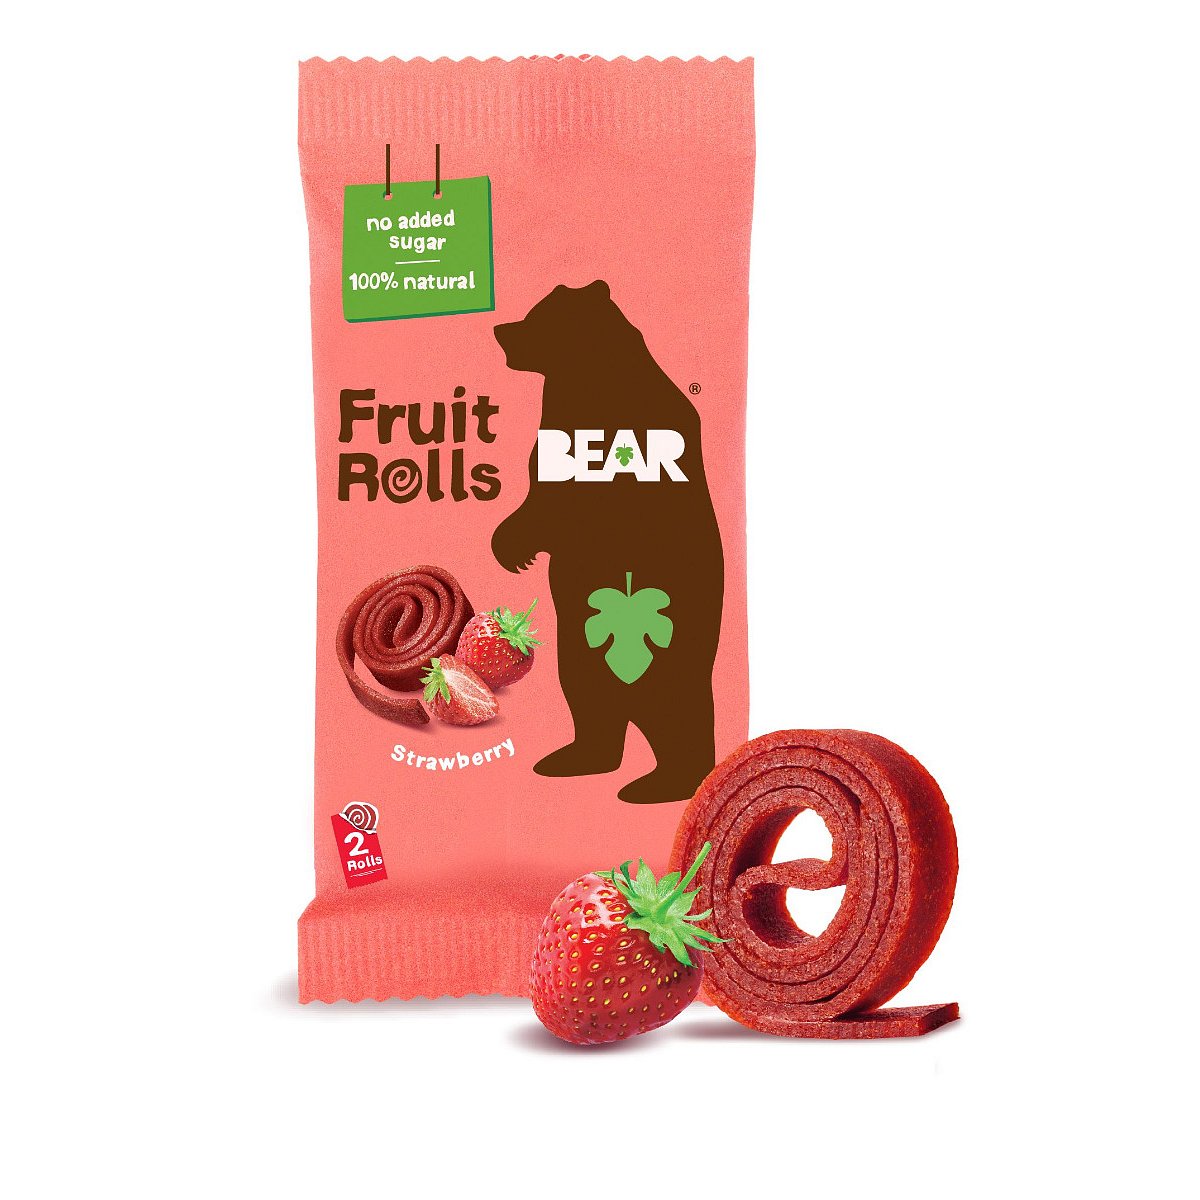 BEAR Fruit Rolls jahoda ovocné rolované plátky 20 g